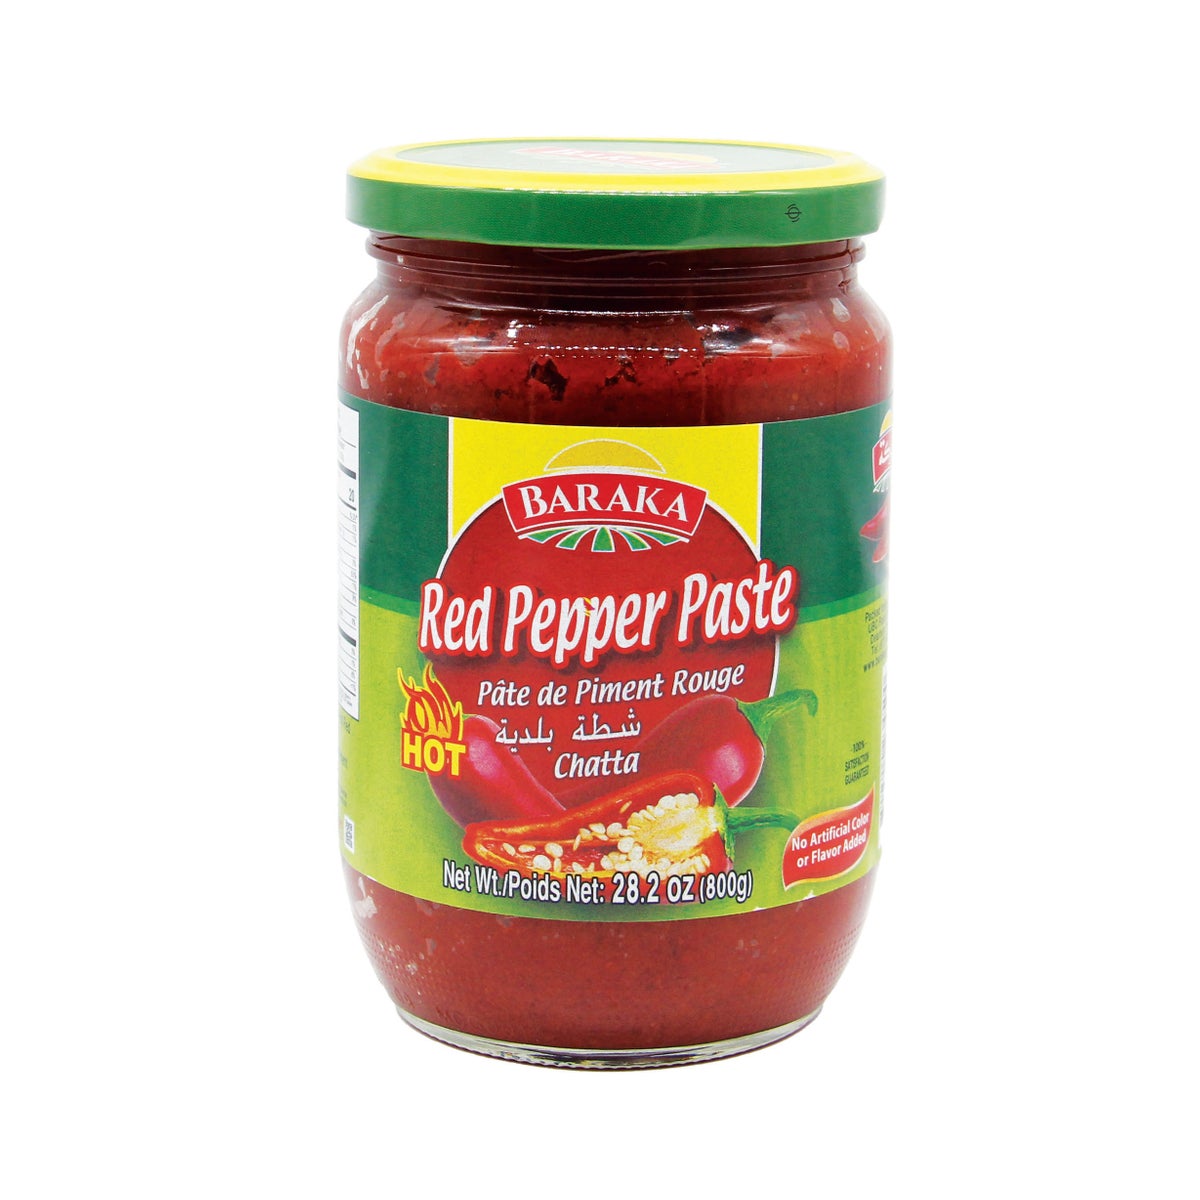 Red Pepper Paste (Shatta) 800g